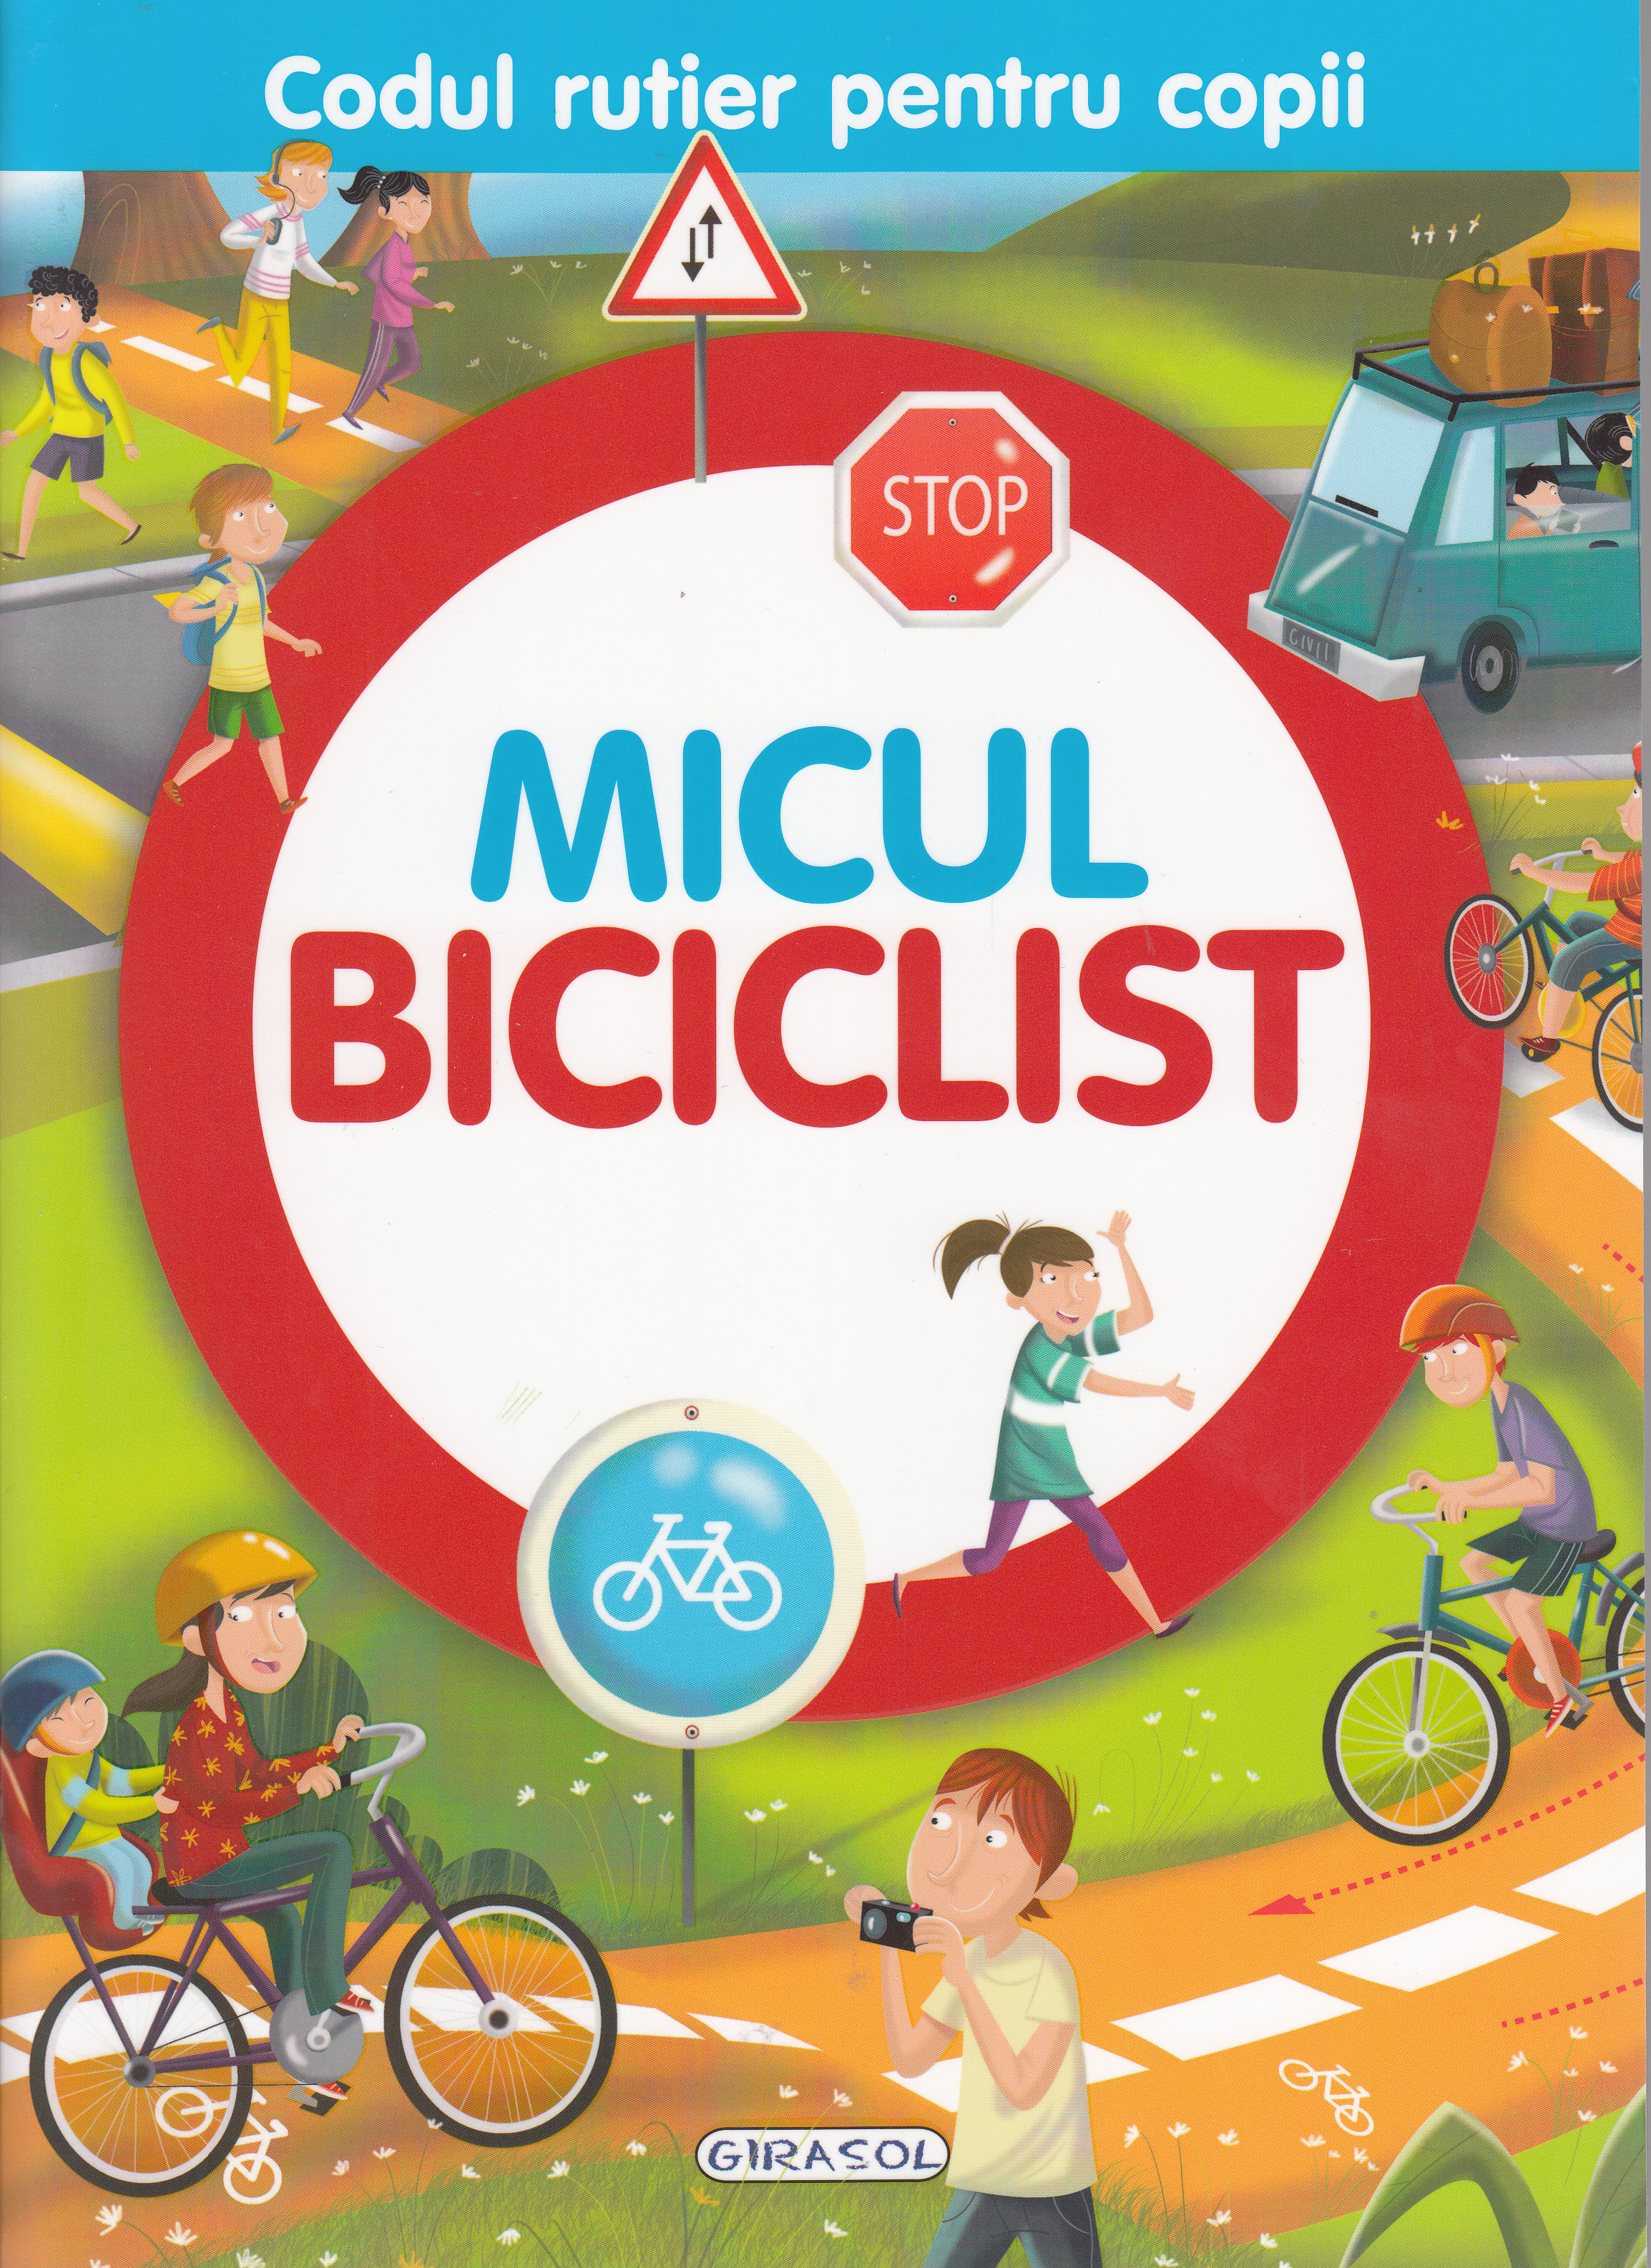 Micul biciclist (Codul rutier pentru copii)